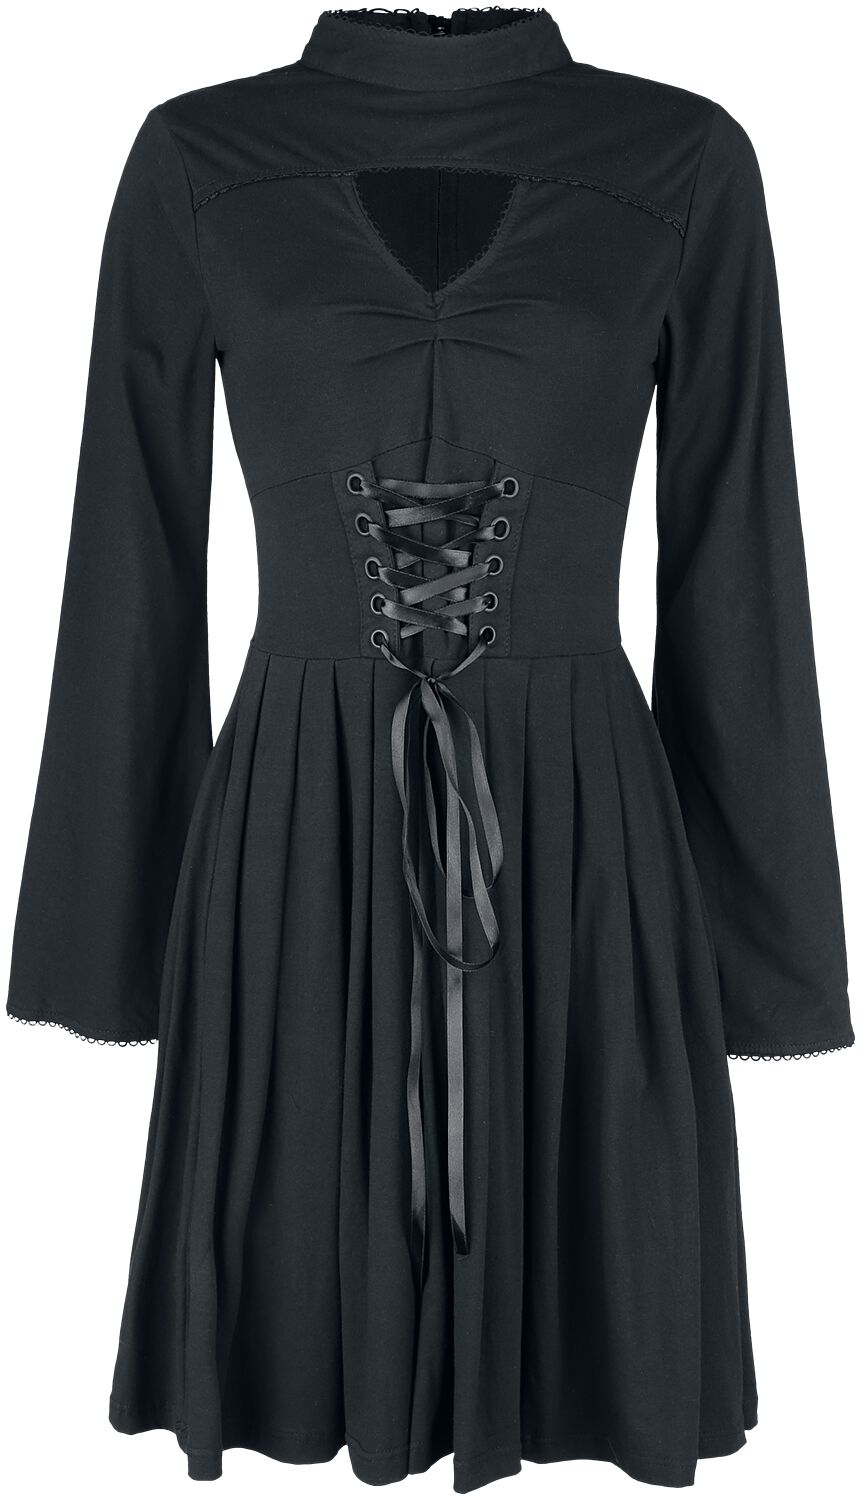 Poizen Industries - Gothic Kleid knielang - Stranger Dress - S bis 4XL - für Damen - Größe S - schwarz von Poizen Industries